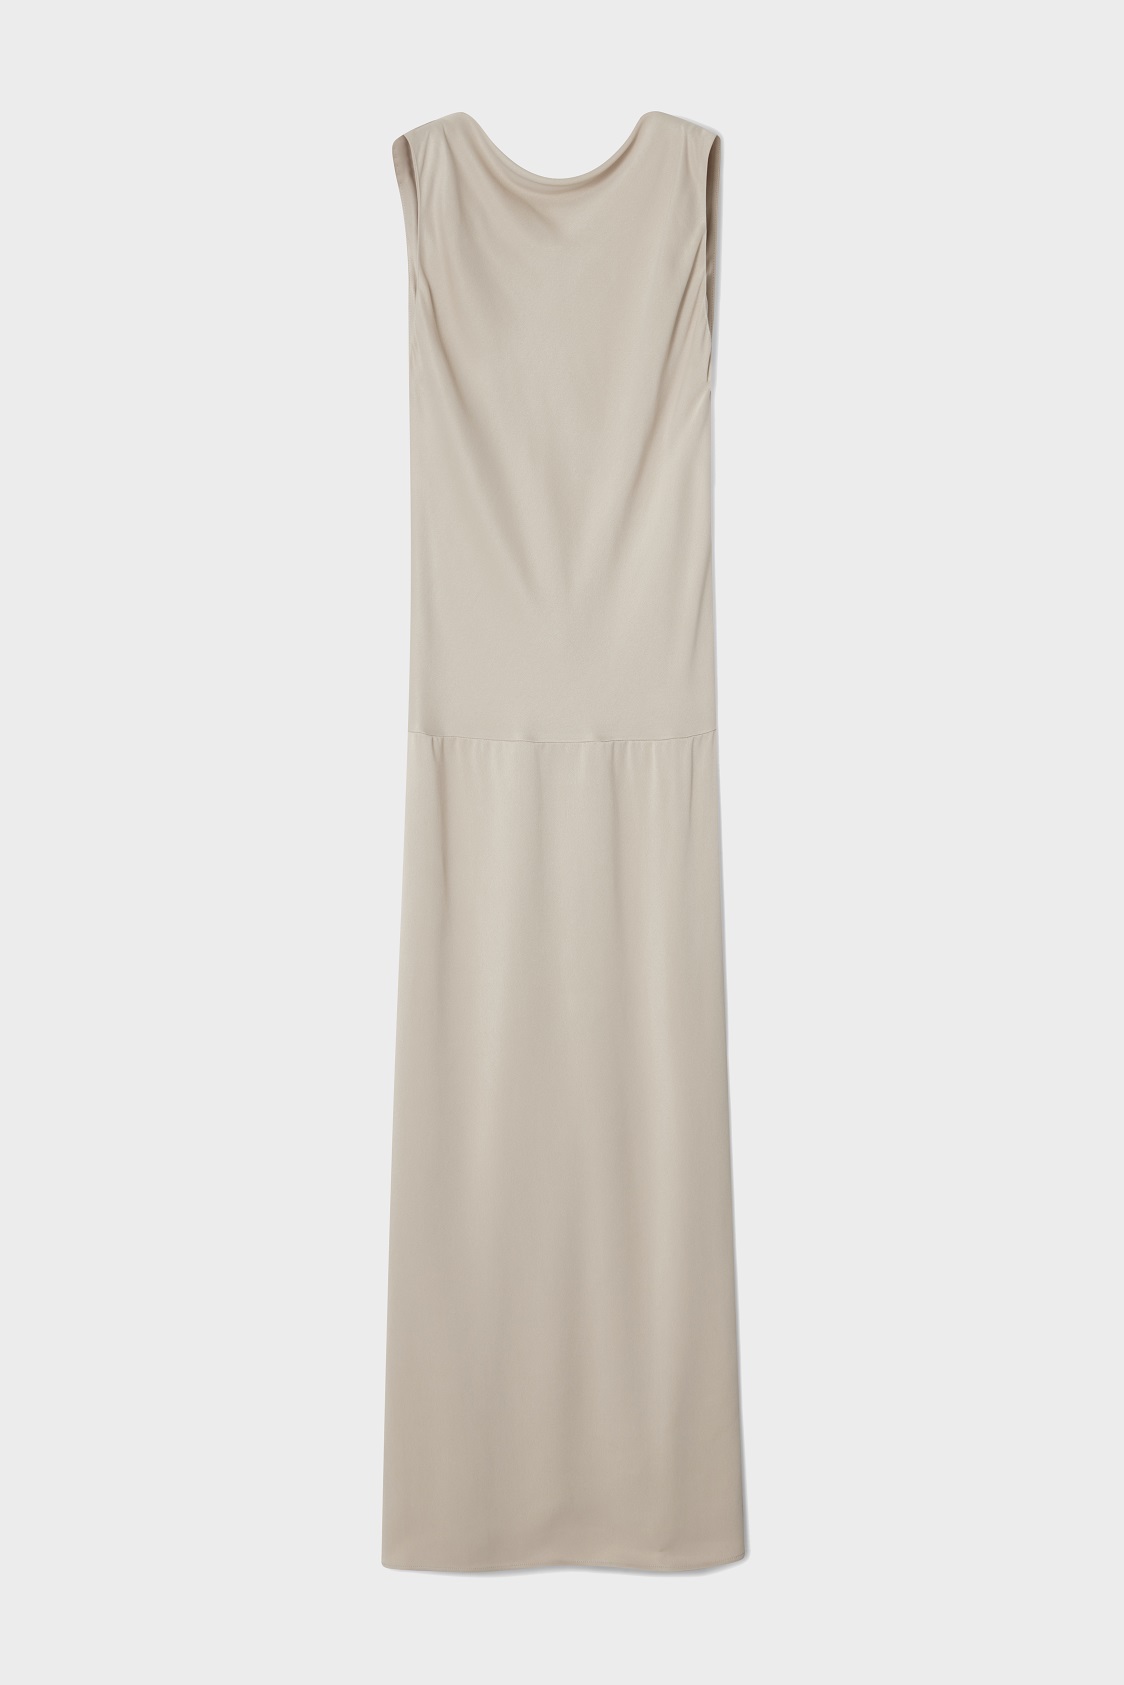 DAGMAR Bias Cut Dress in Pearl Grey 36